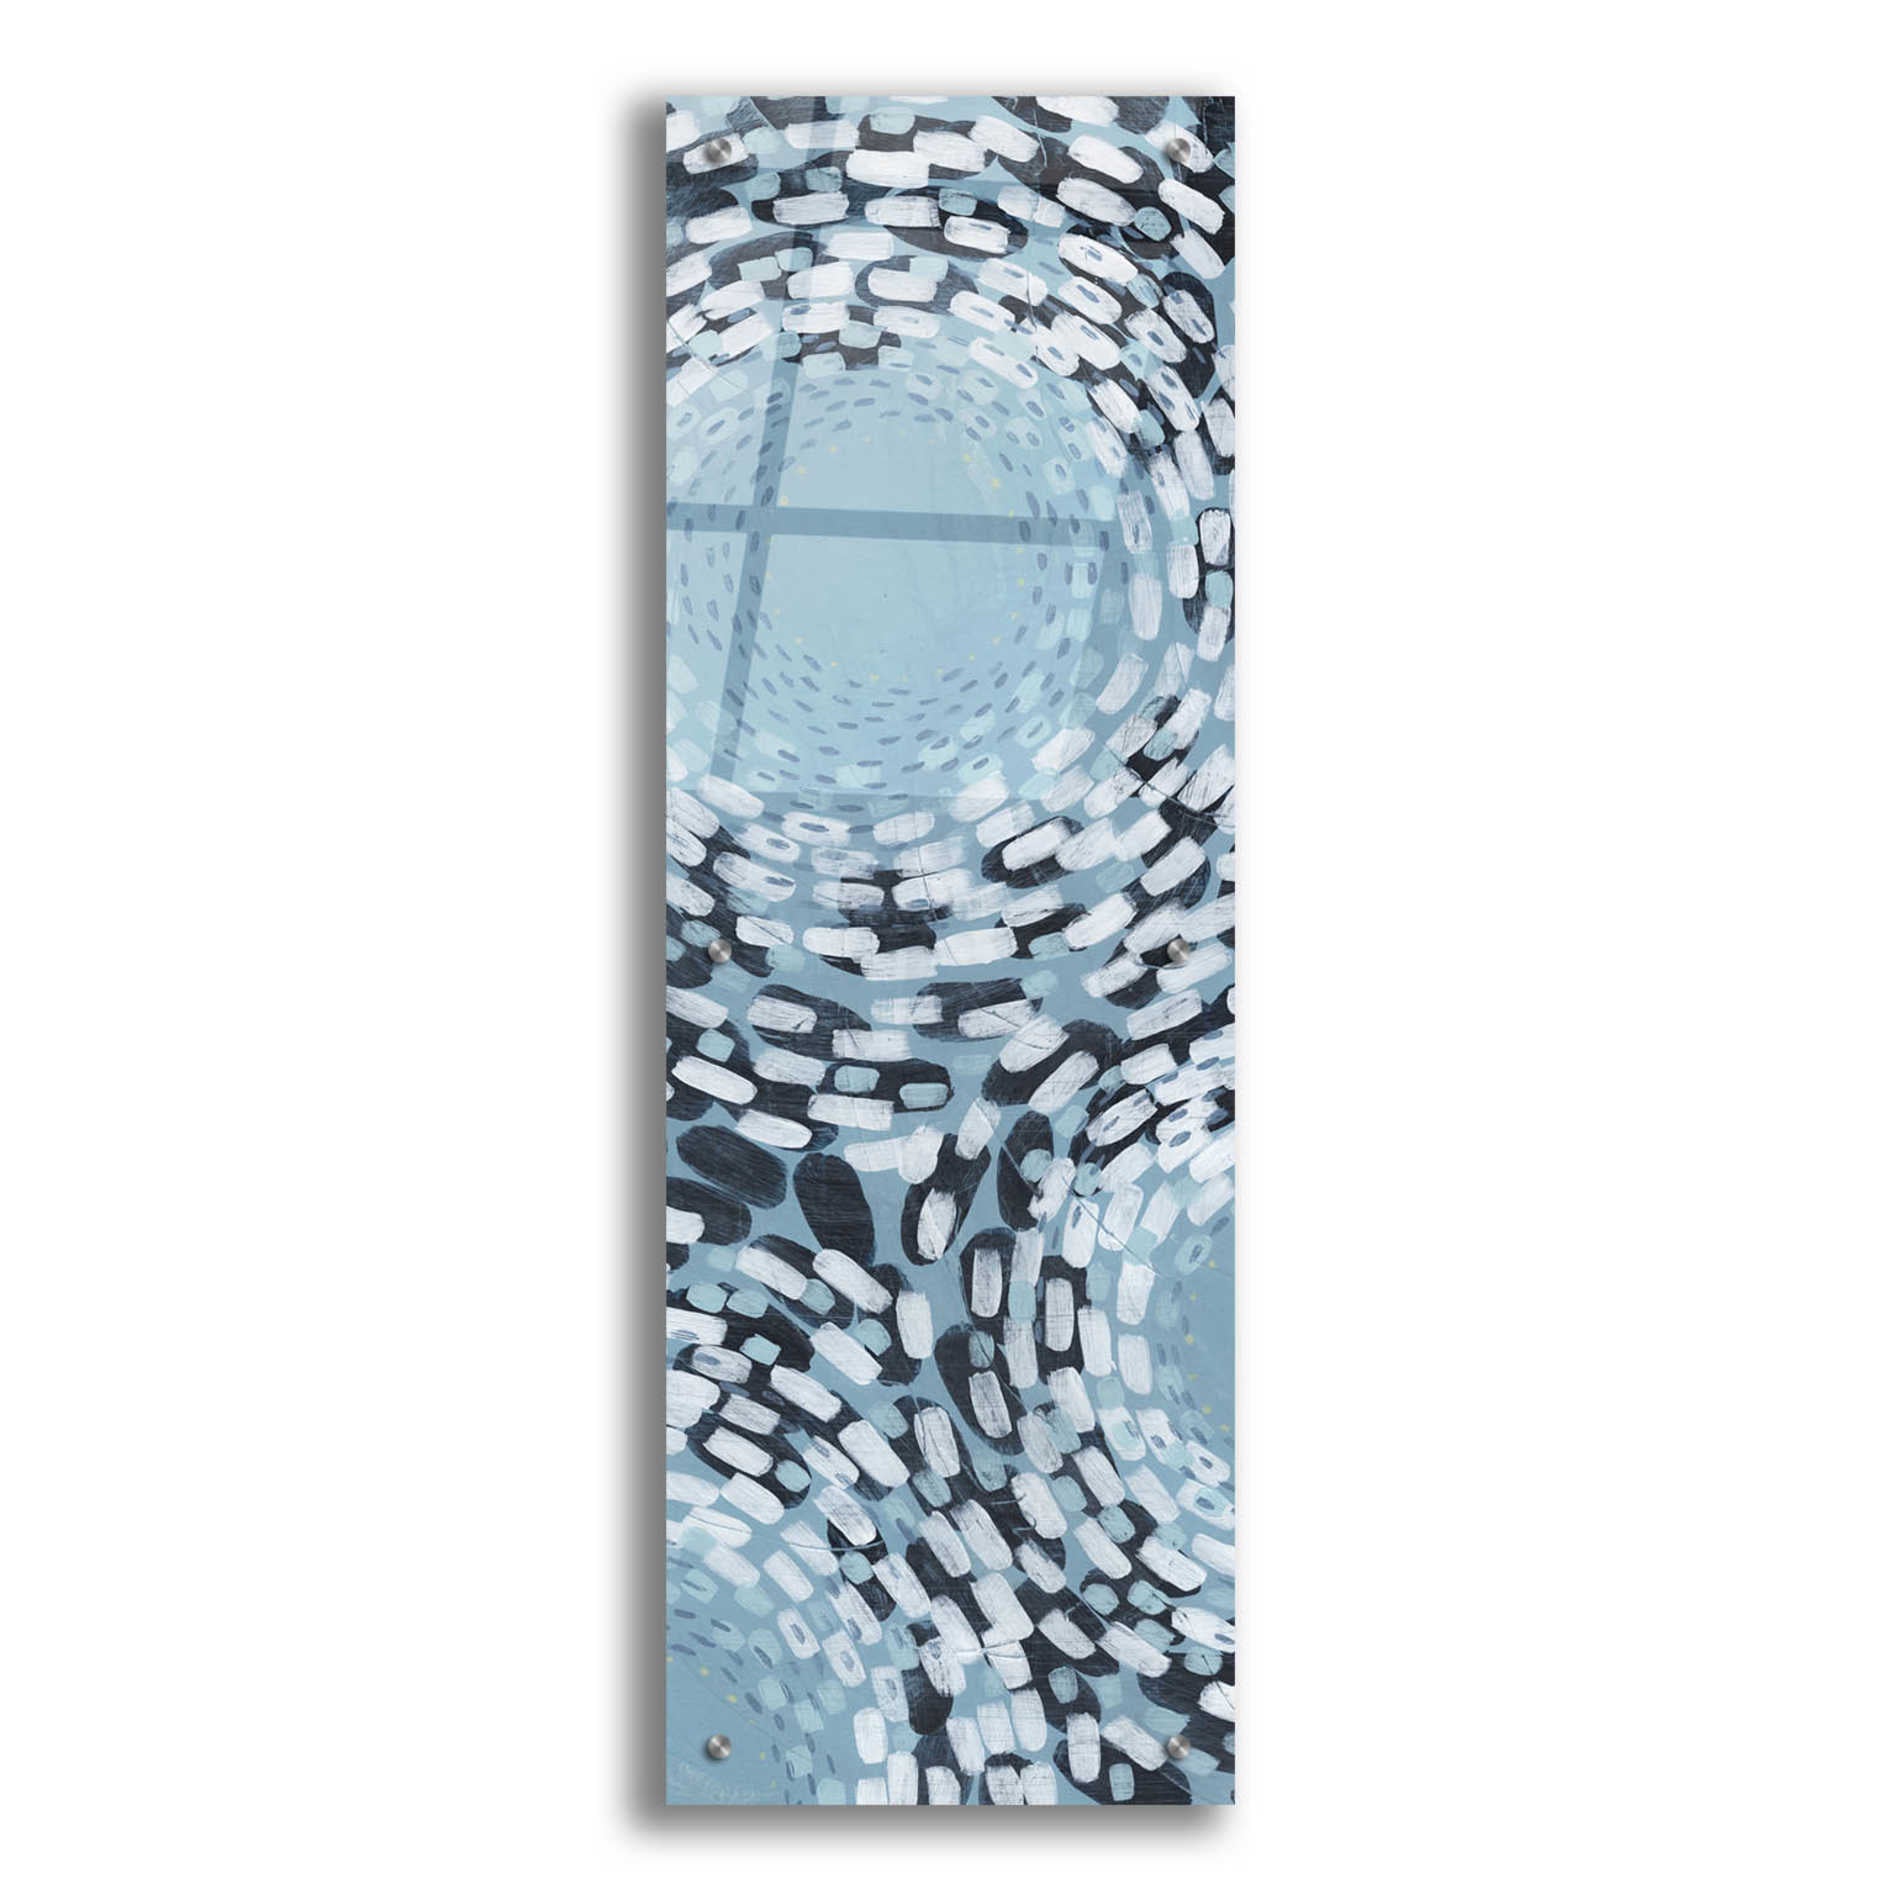 Epic Art 'Whirlpool II' by Grace Popp,Acrylic Glass Wall Art,12x36